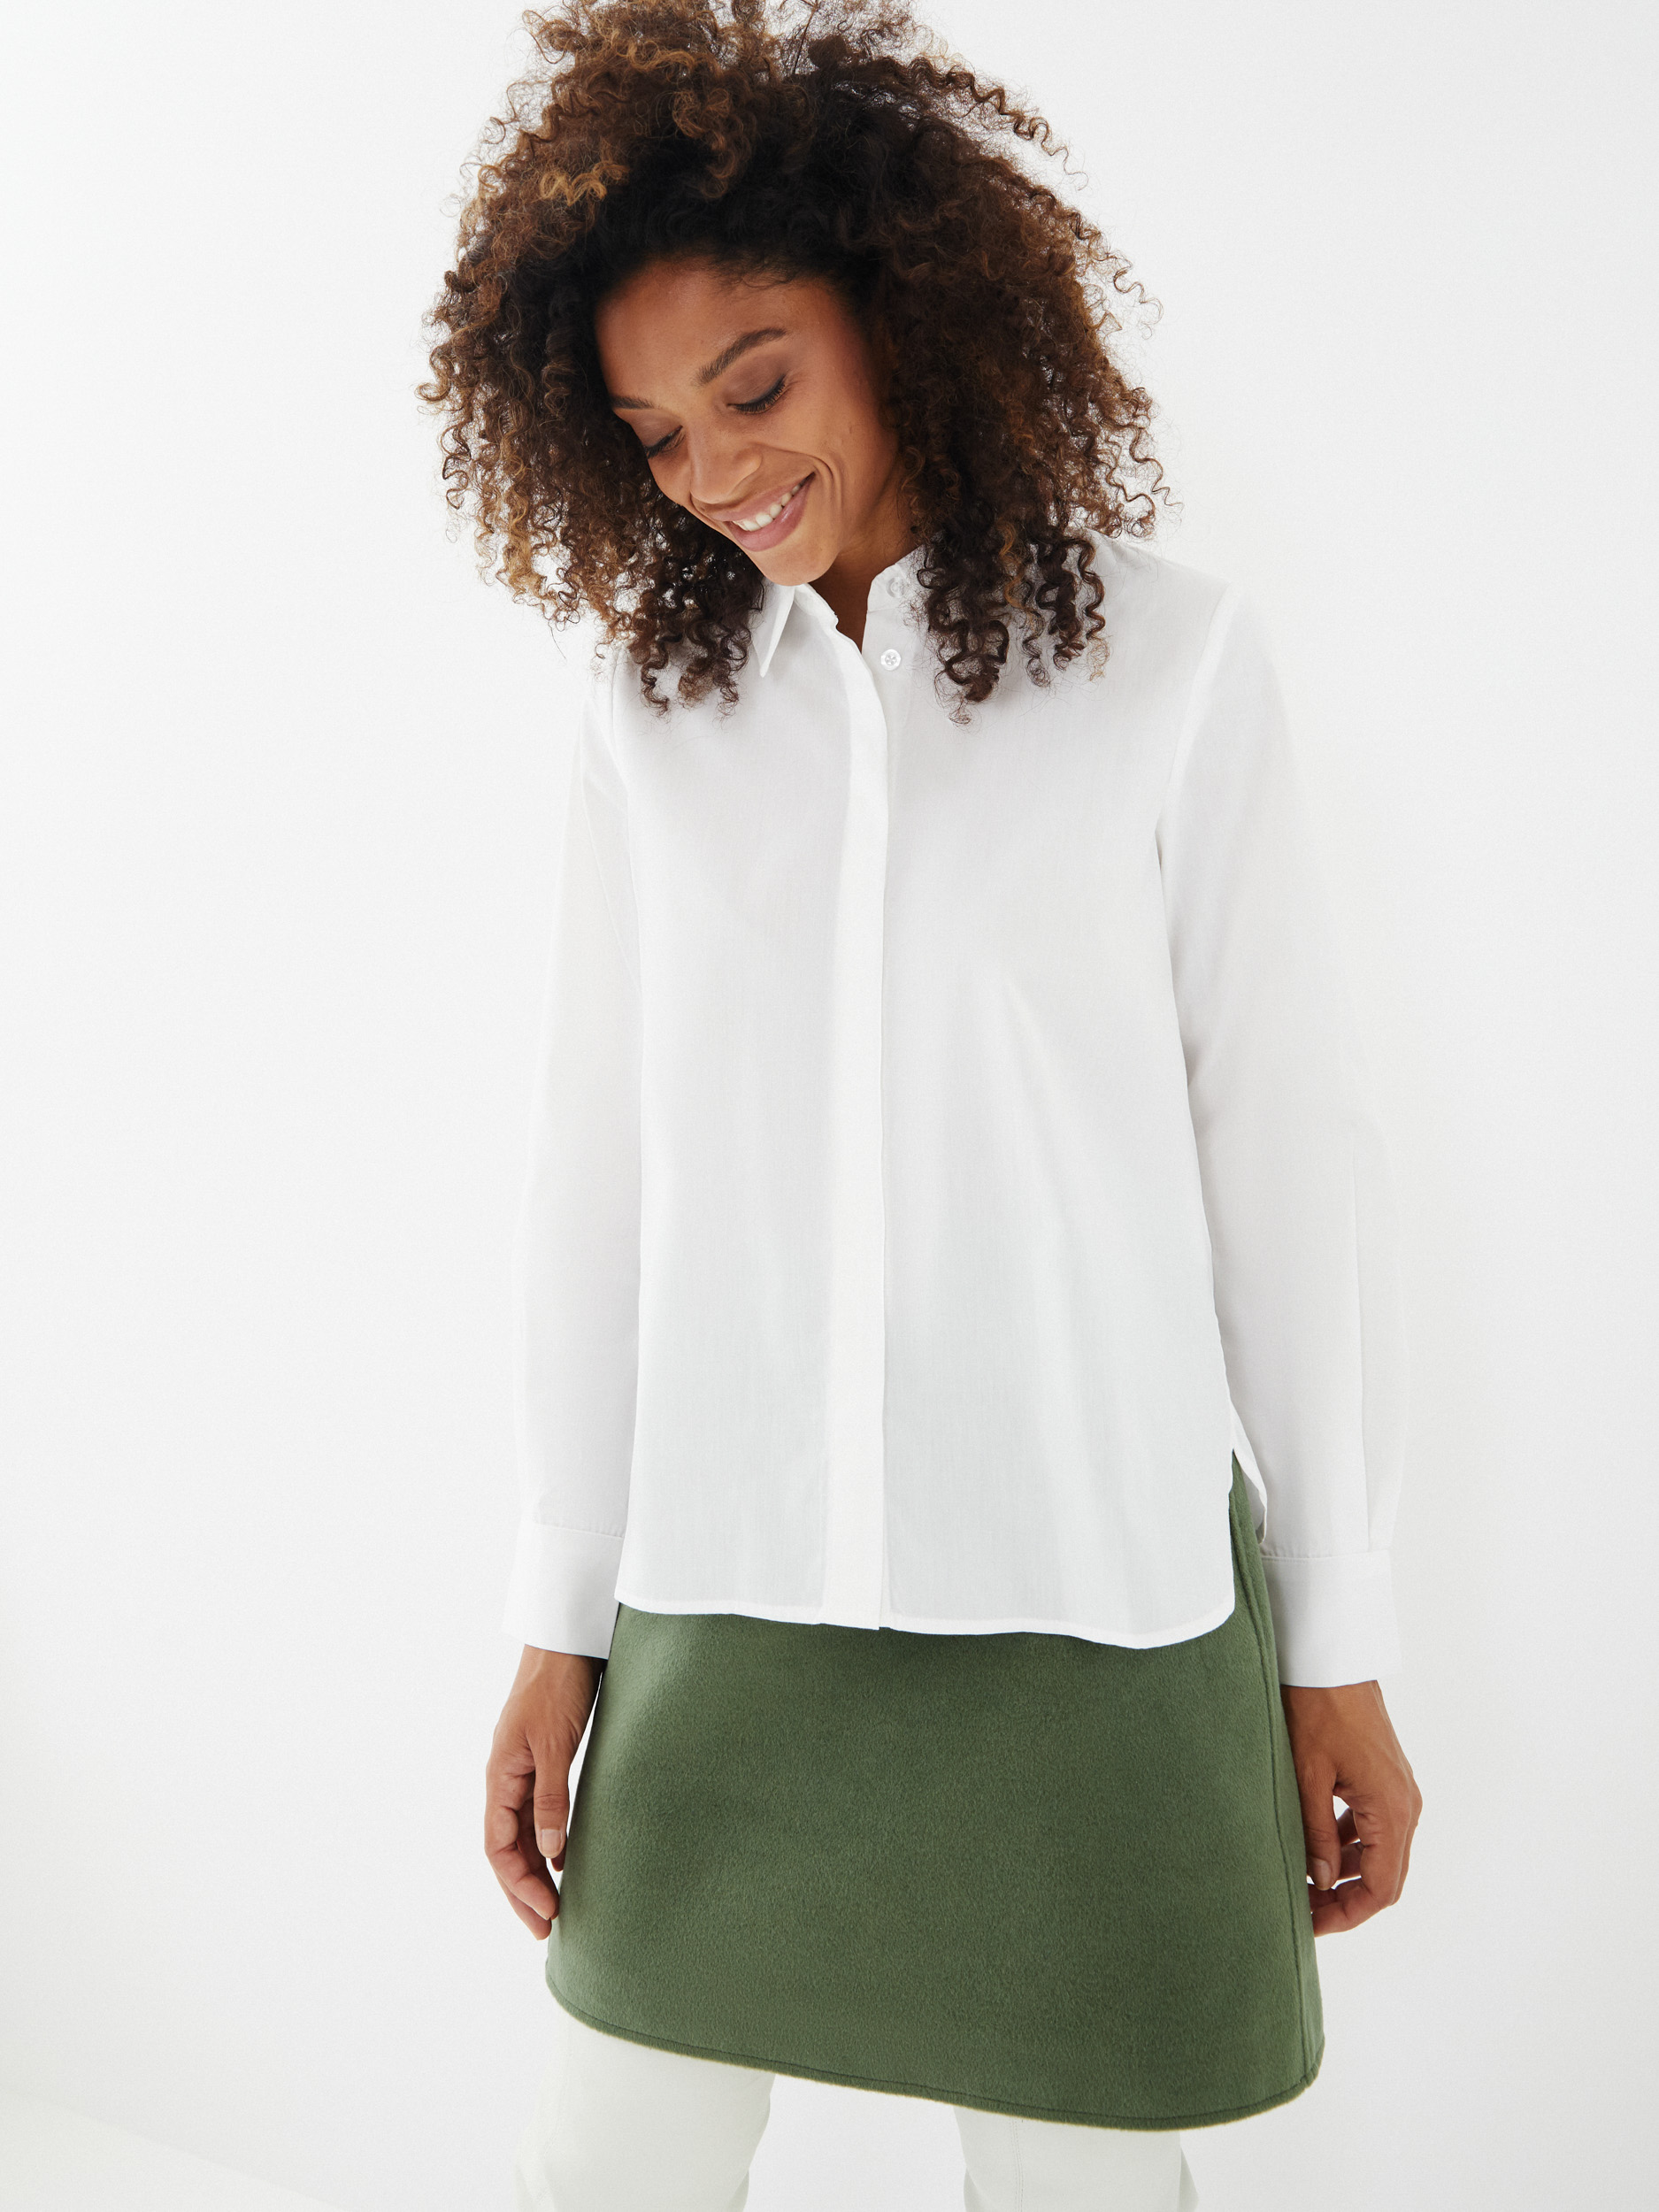 Классика дресс-кода: 12 идеальных белых блузок на осень